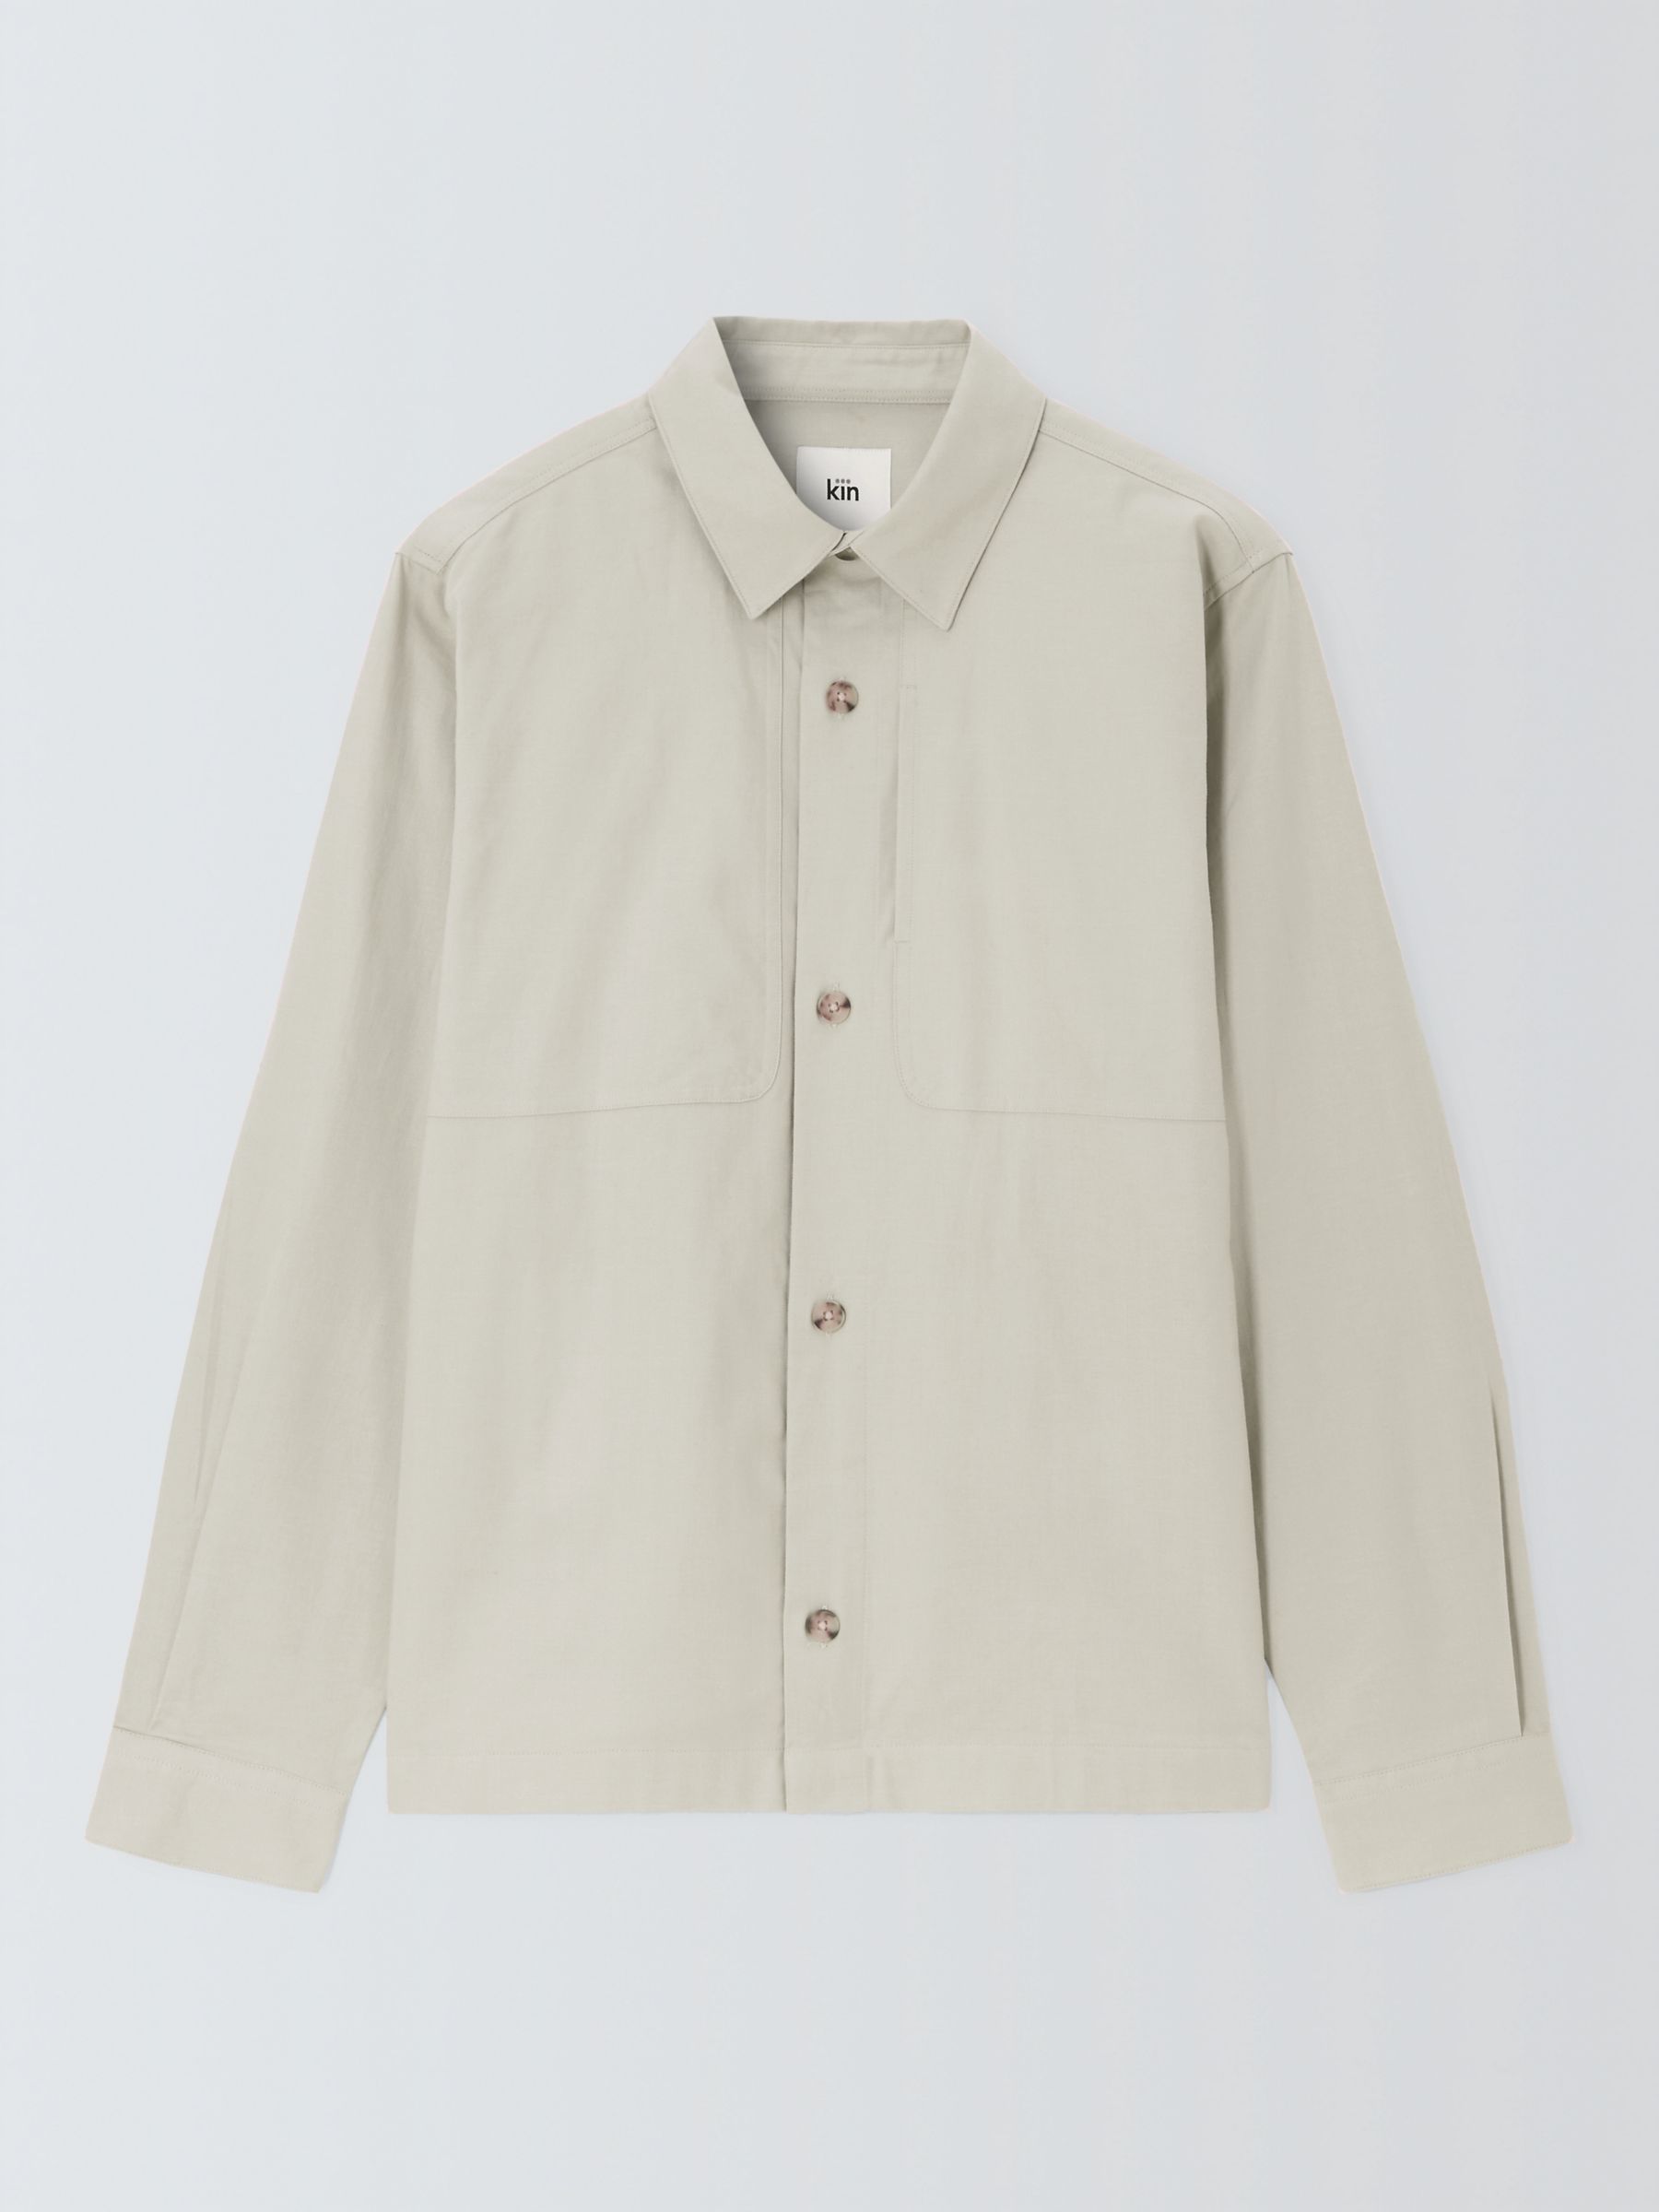 Kin Cotton Linen Blend Overlay Overshirt, Silver Birch, M